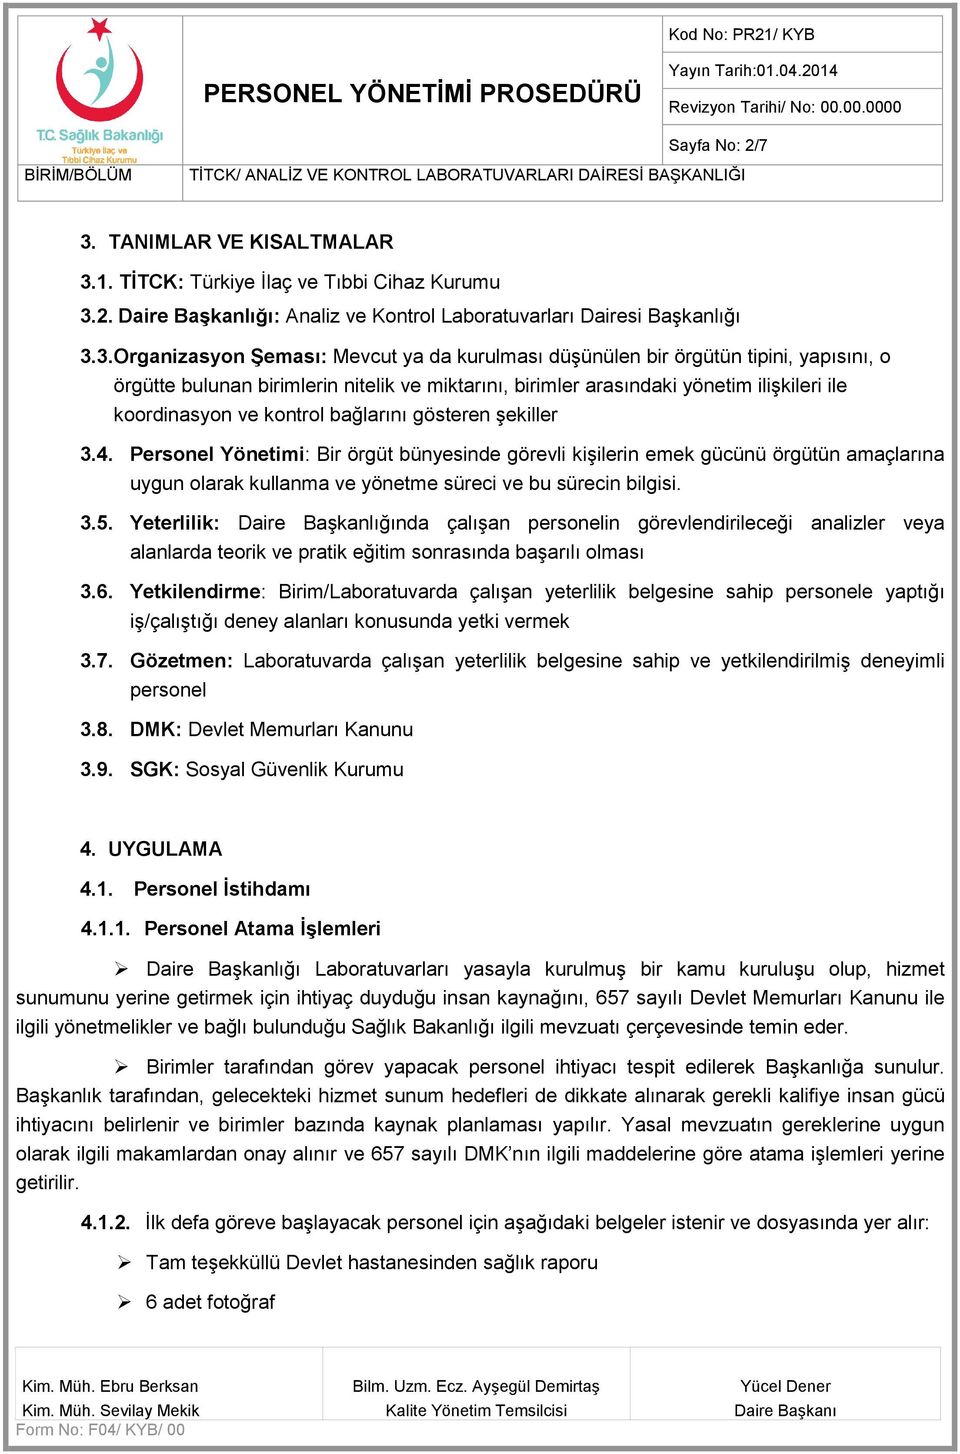 1. TİTCK: Türkiye İlaç ve Tıbbi Cihaz Kurumu 3.